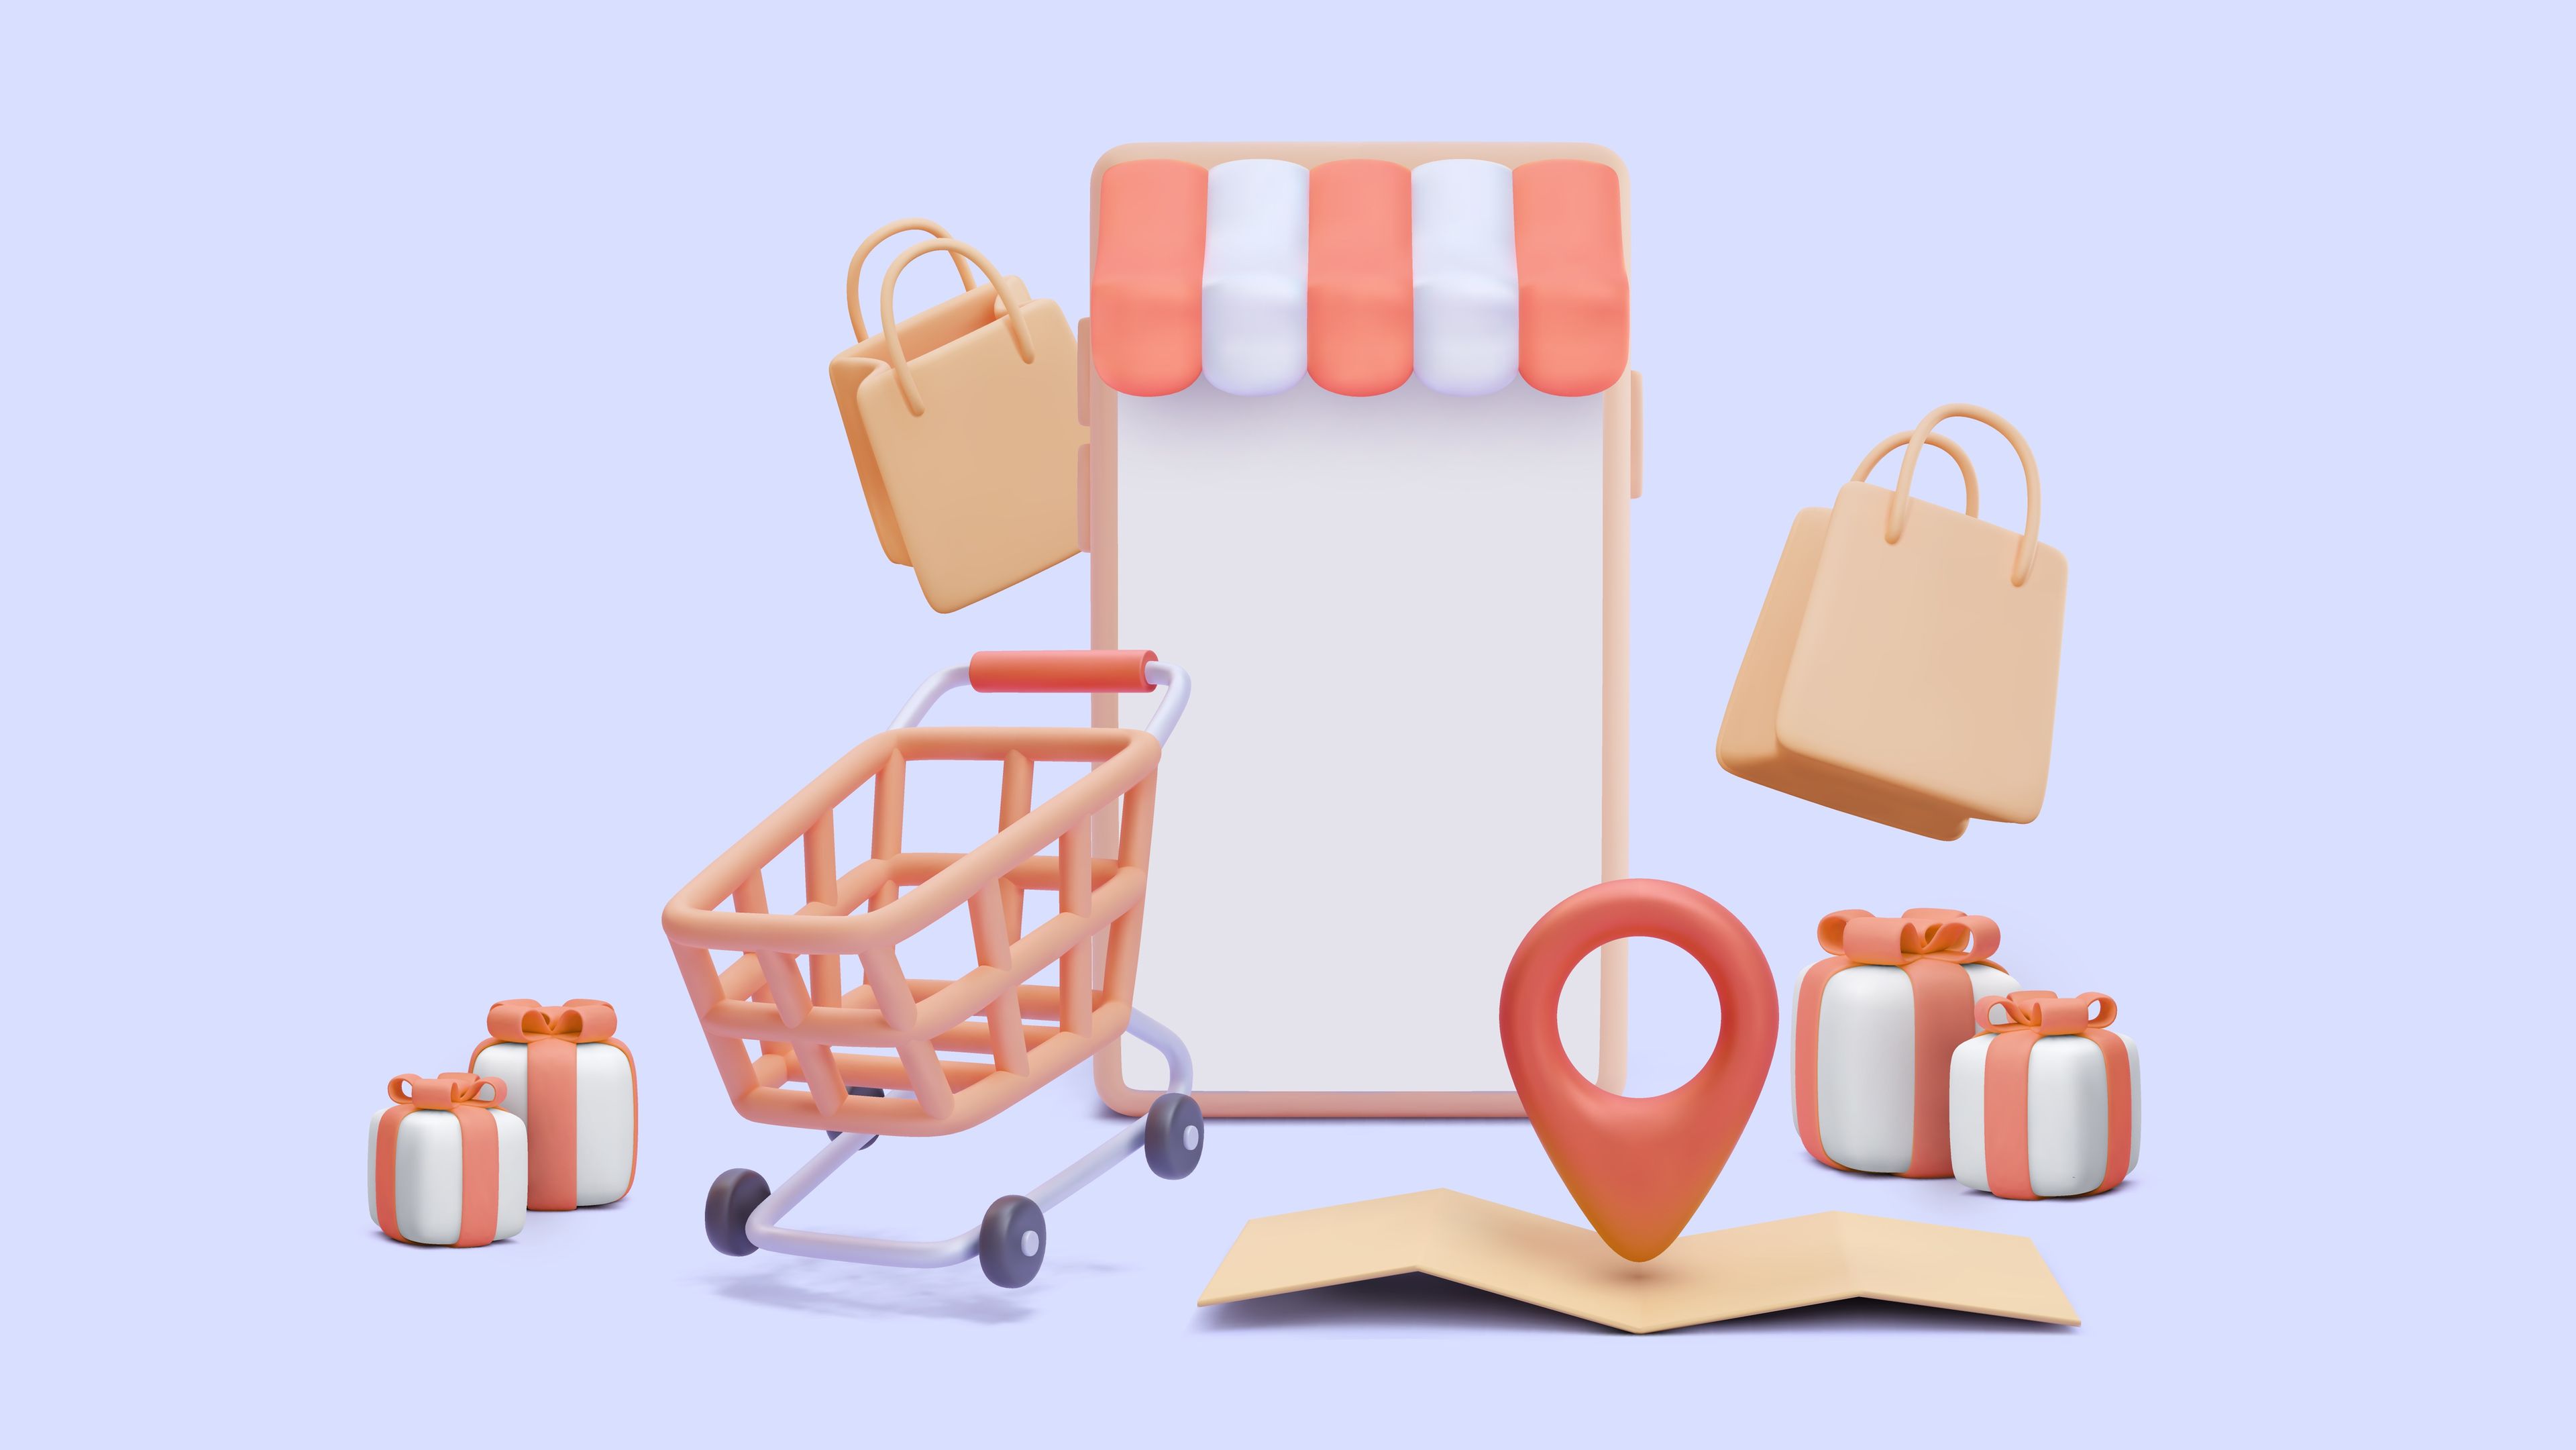 Ilustración de elementos de una tienda, carrito de compra, bolsa de compra o regalos